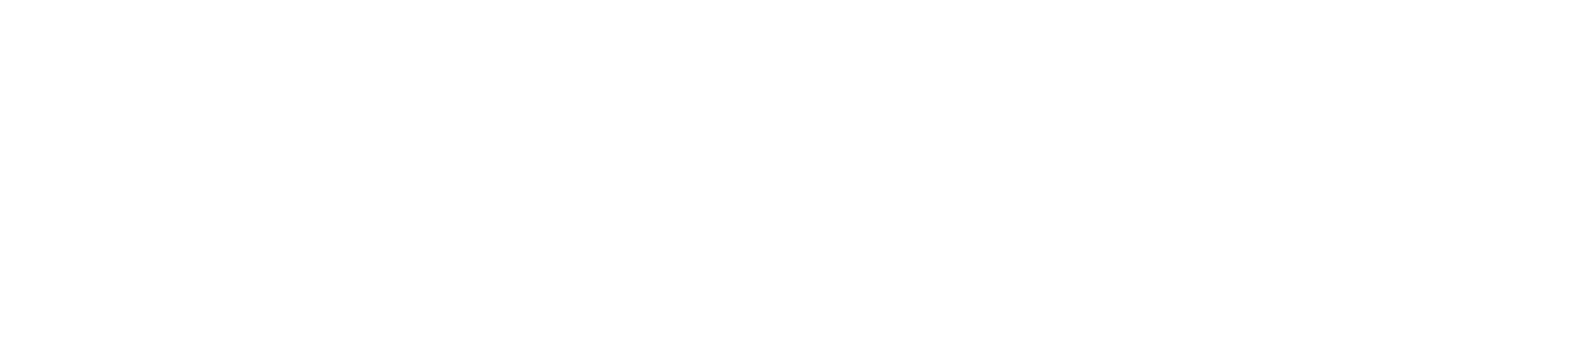 Advantage Solutions logo large for dark backgrounds (transparent PNG)